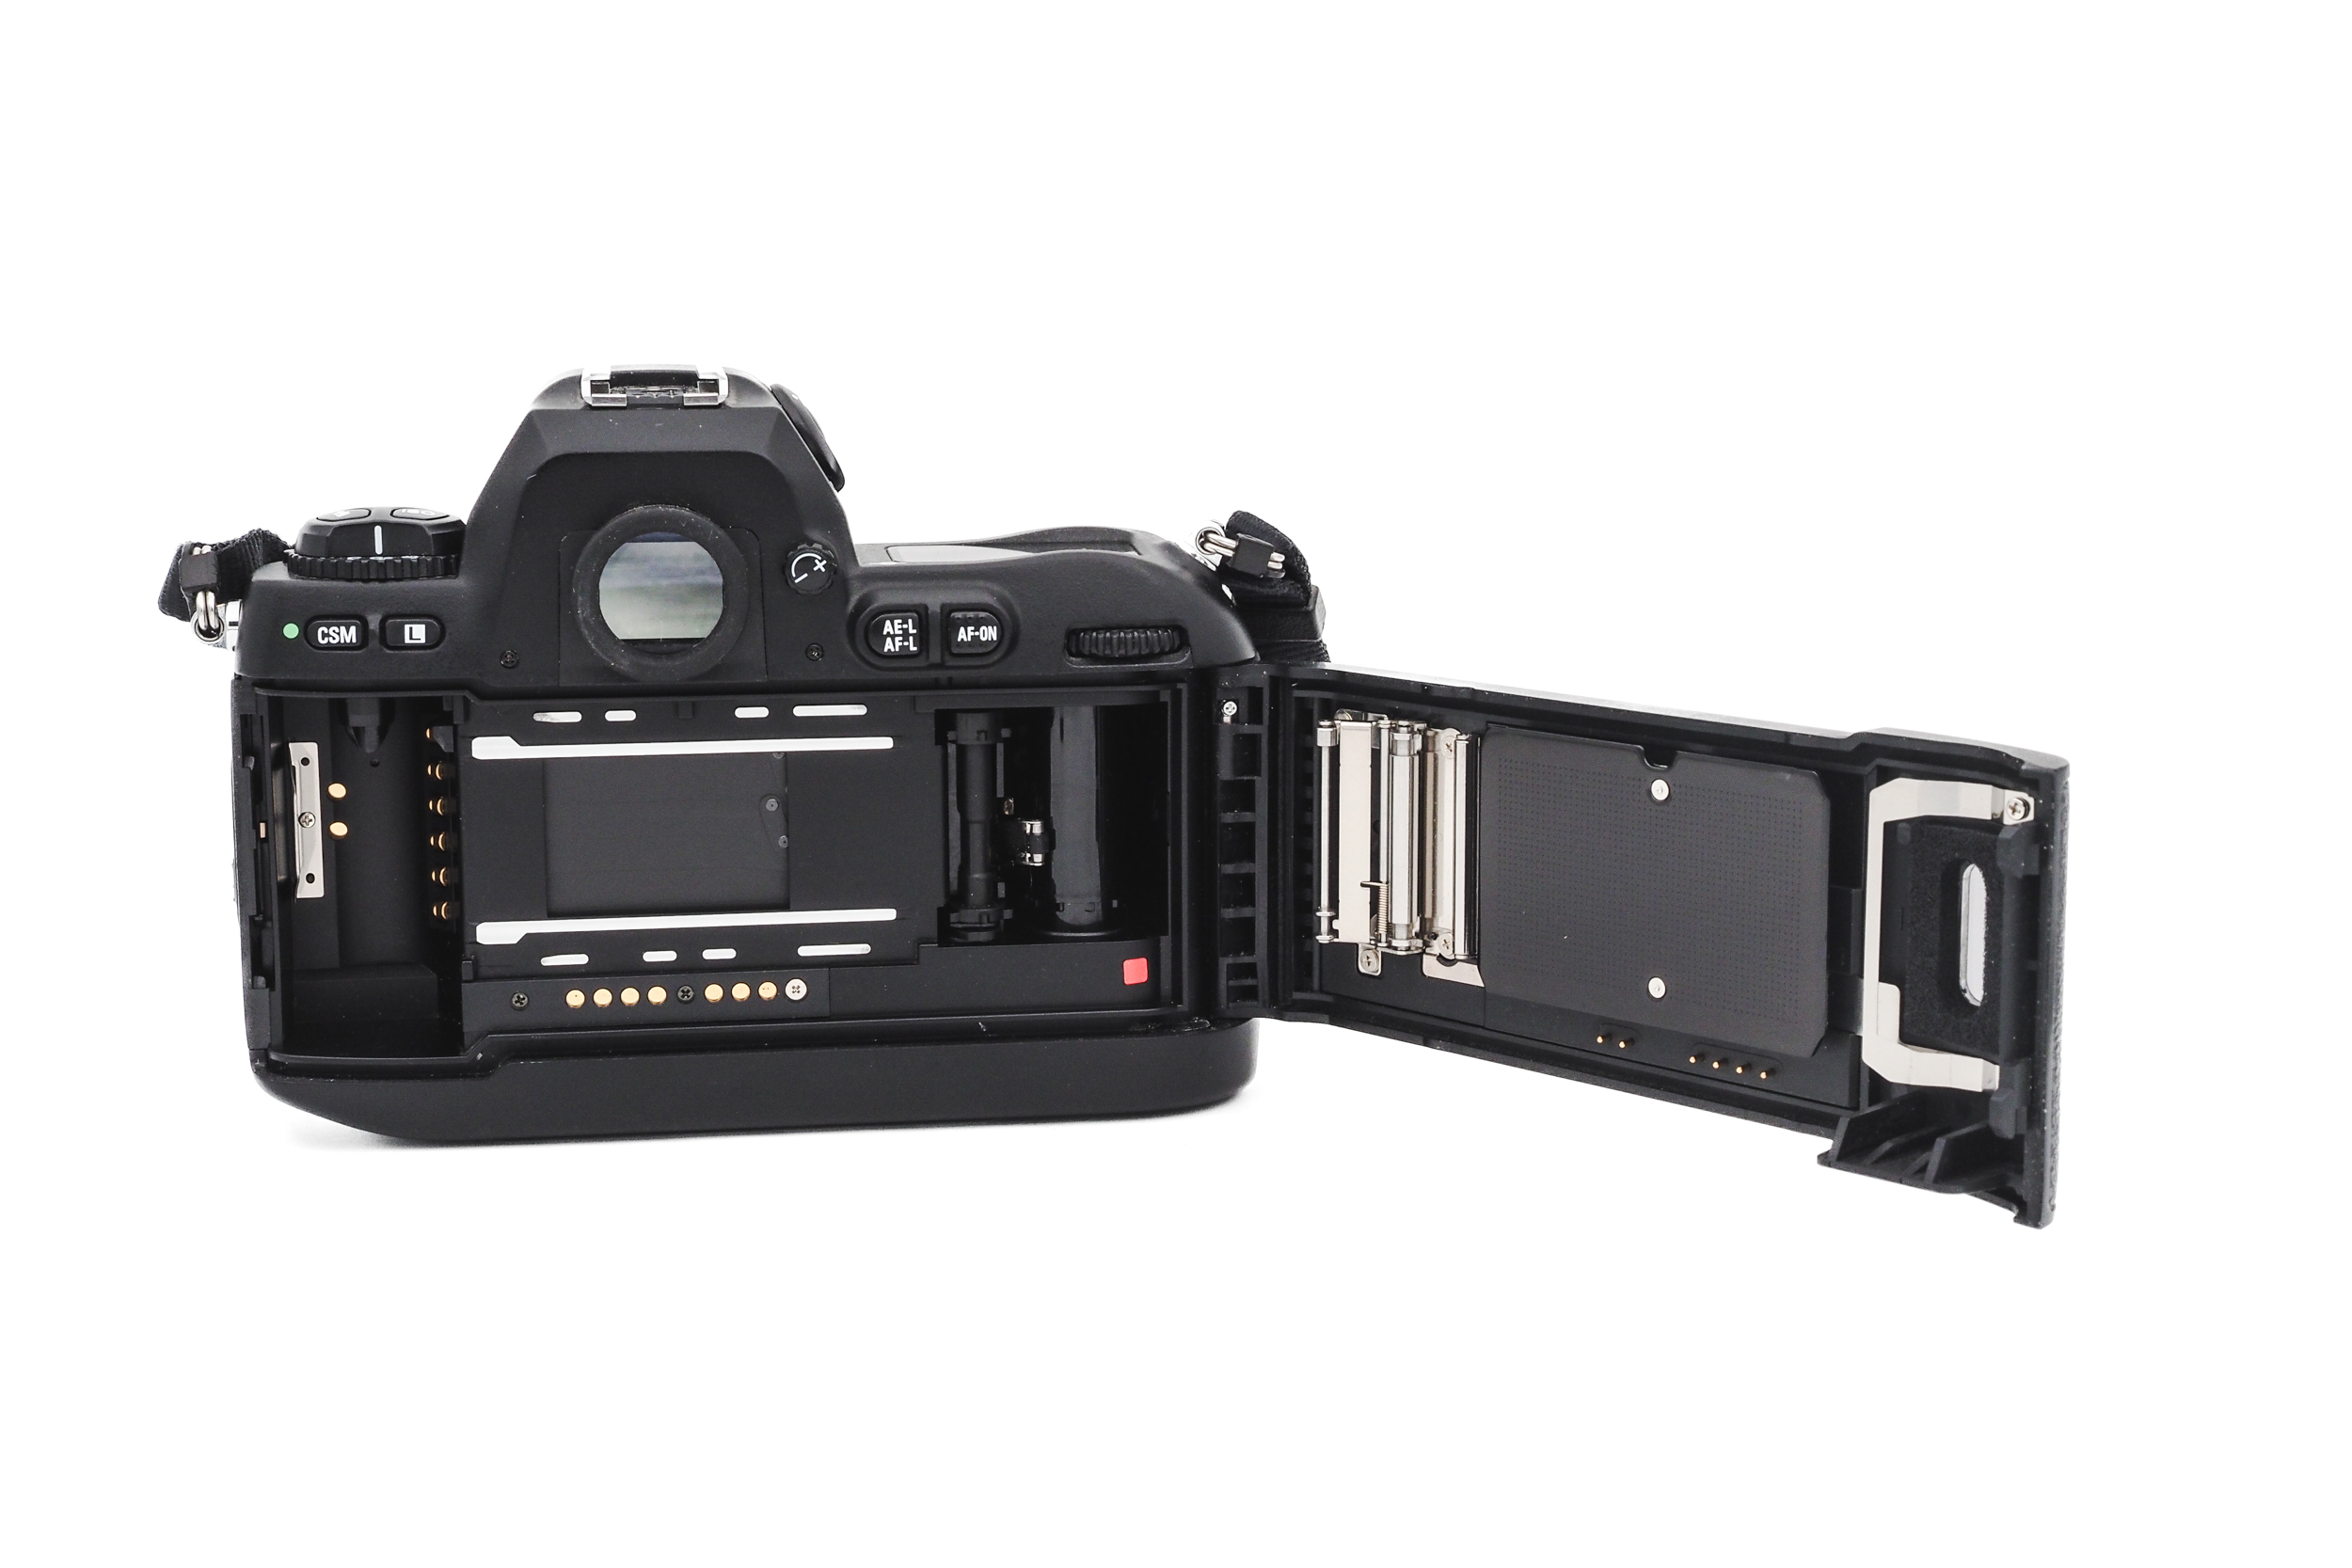 Nikon F100 + 50mm f/1.4 D AF Nikkor